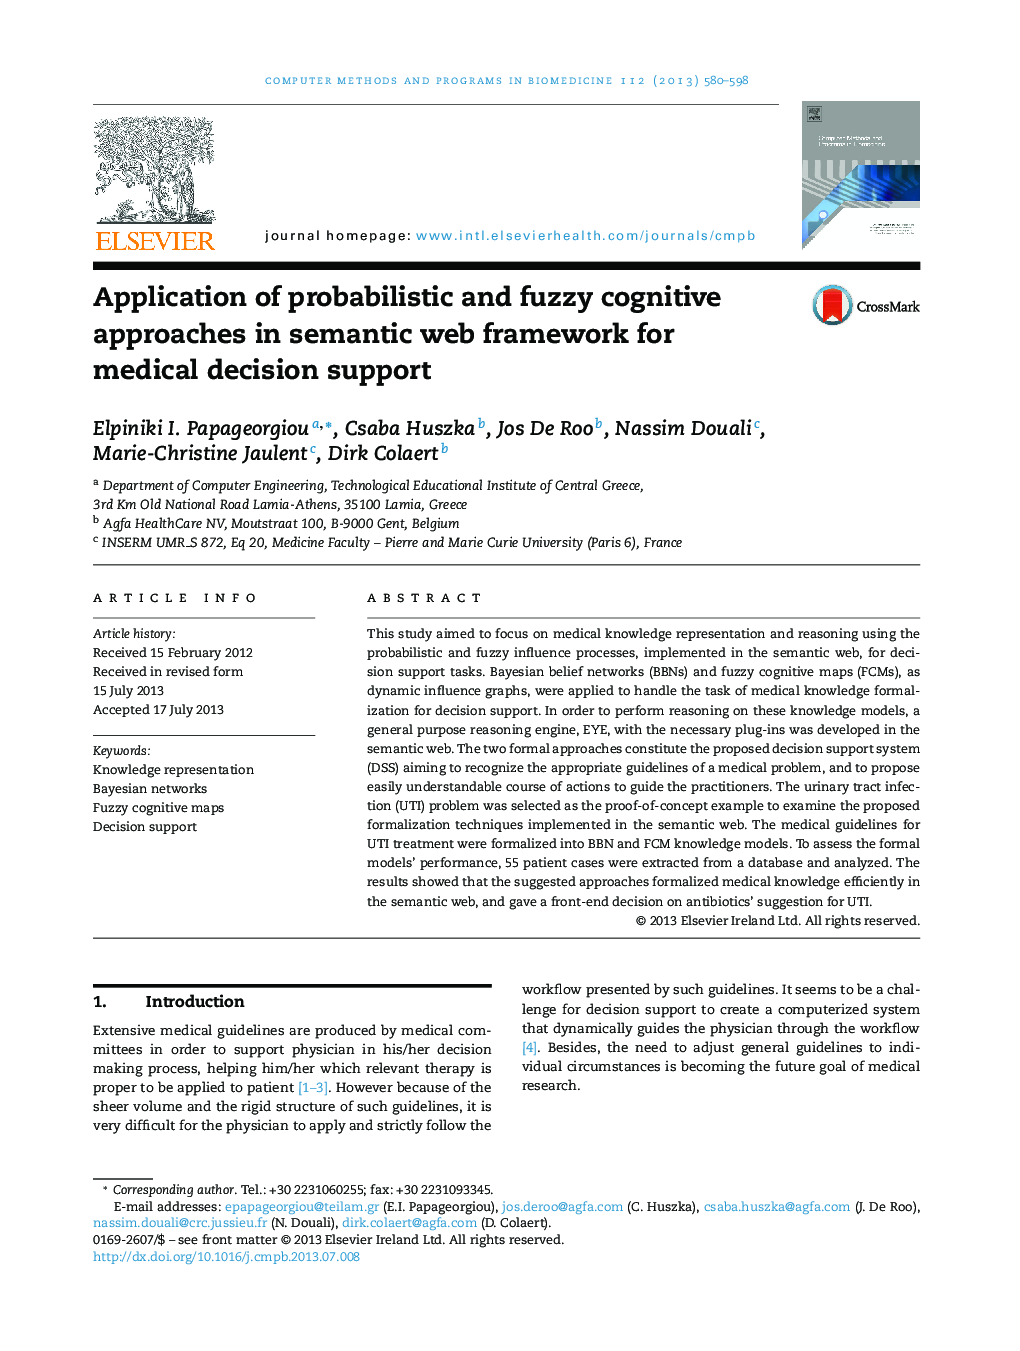 کاربرد رویکردهای شناختی احتمالی و فازی در چارچوب وب معنایی برای حمایت از تصمیم گیری پزشکی 